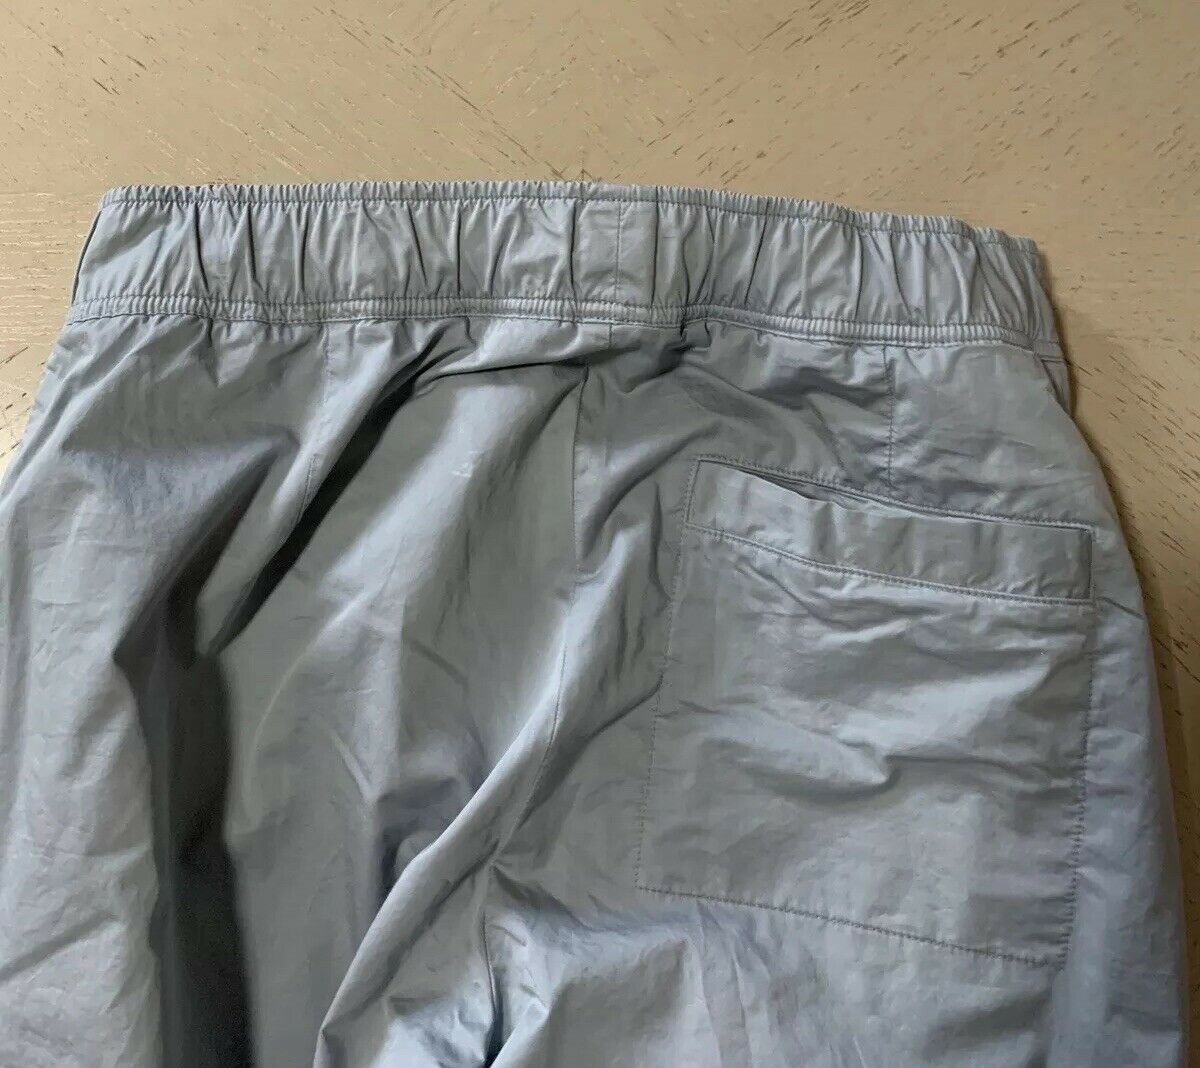 New $1190 Bottega Veneta Mens Suit ( Shirt .Pants ) Color Artic Size 30 US/46 Eu